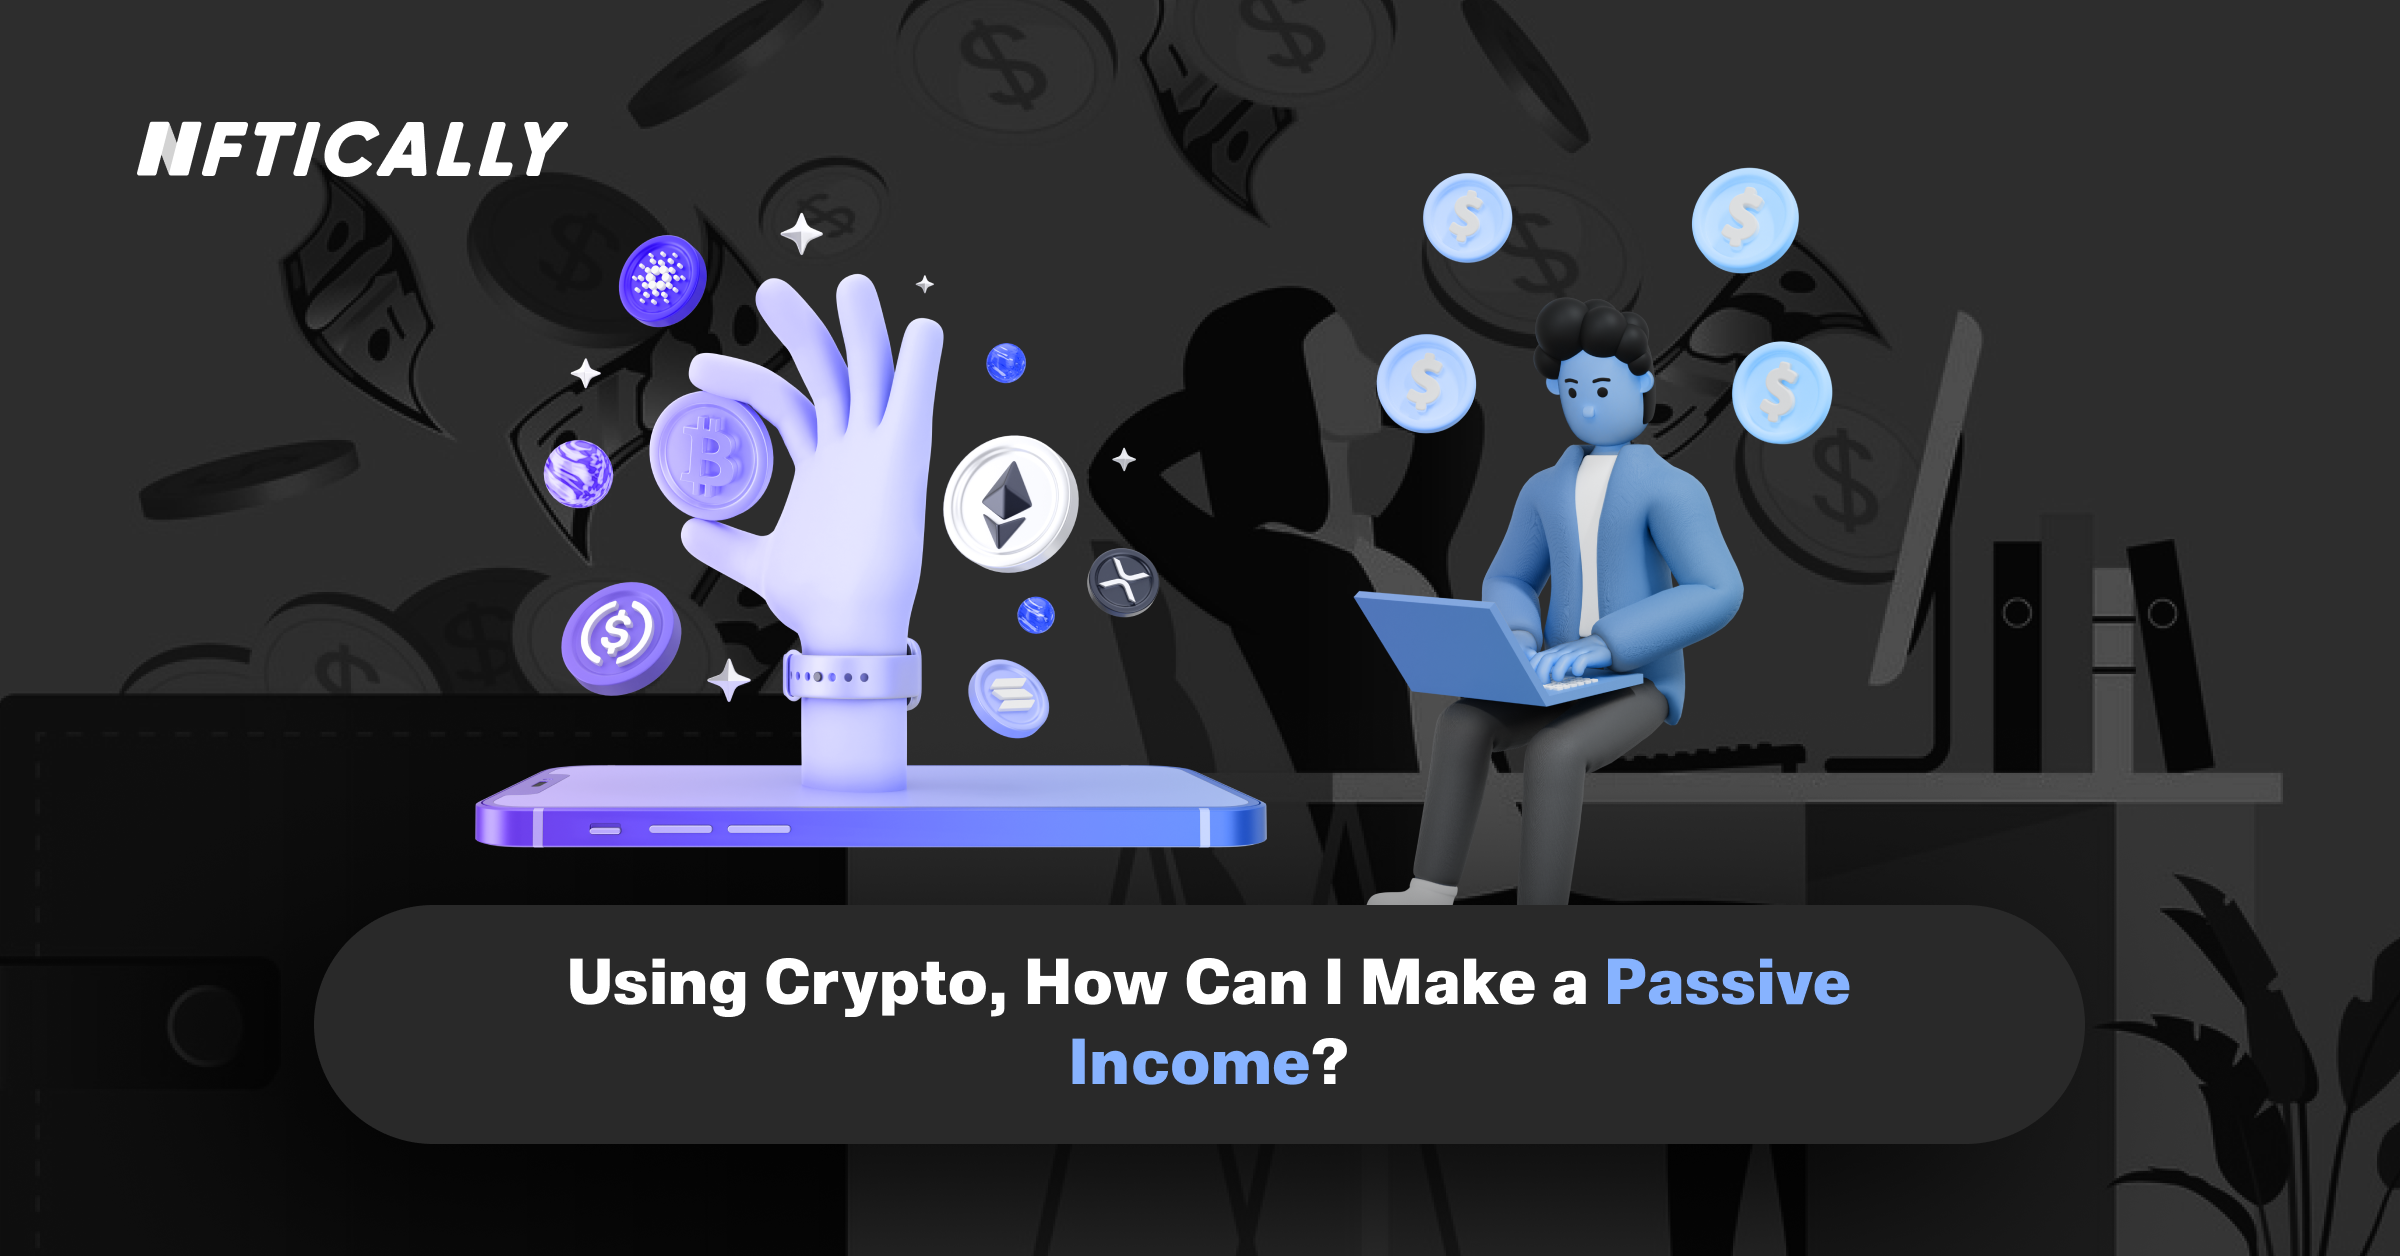 En utilisant la crypto, comment puis-je gagner un revenu passif ?